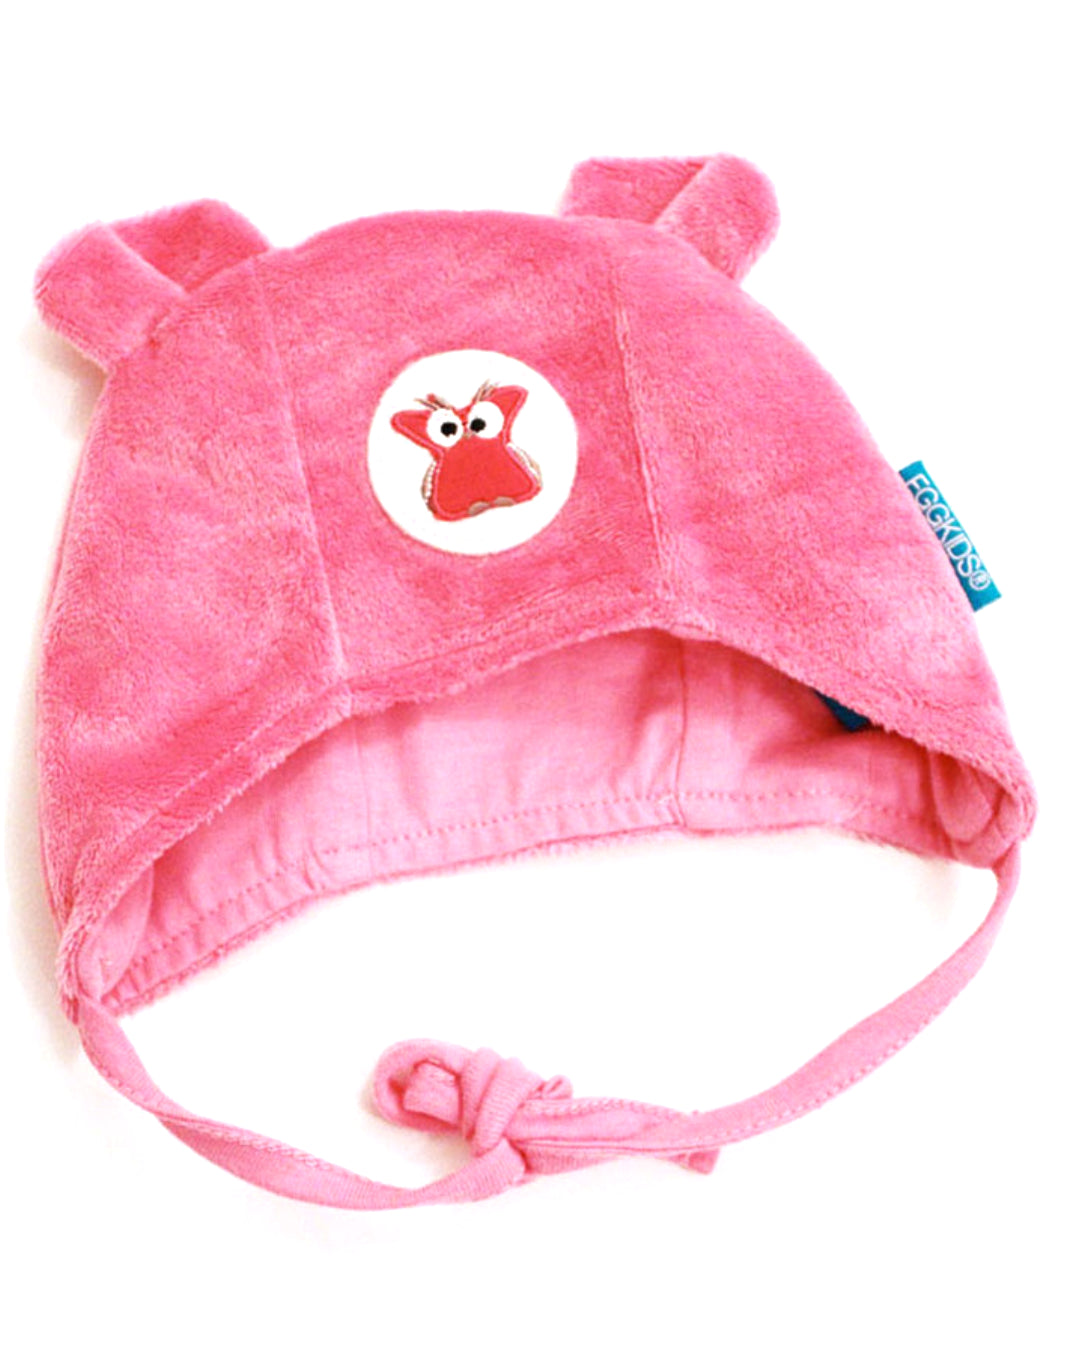 Rosa Babymütze mit Ohren und Eulen Emblem